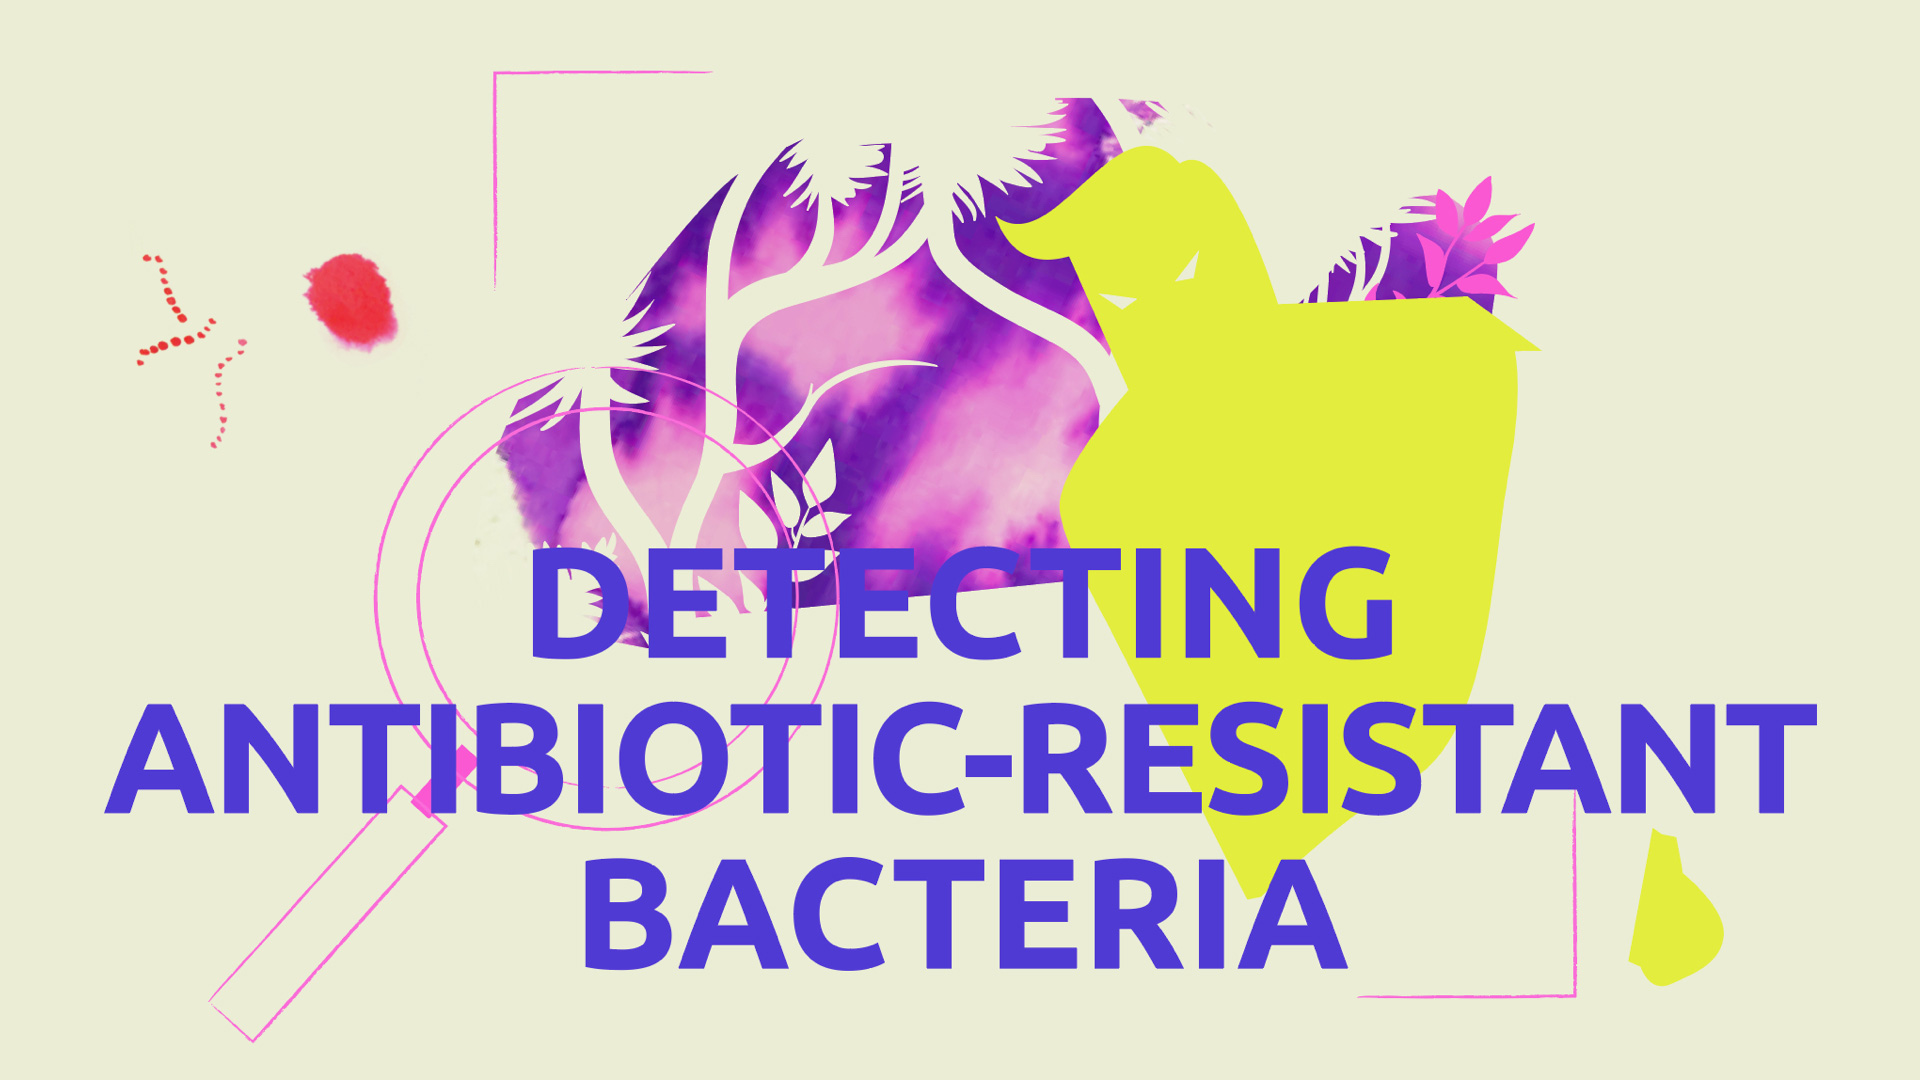 Detecting antibiotic-resistant bacteria